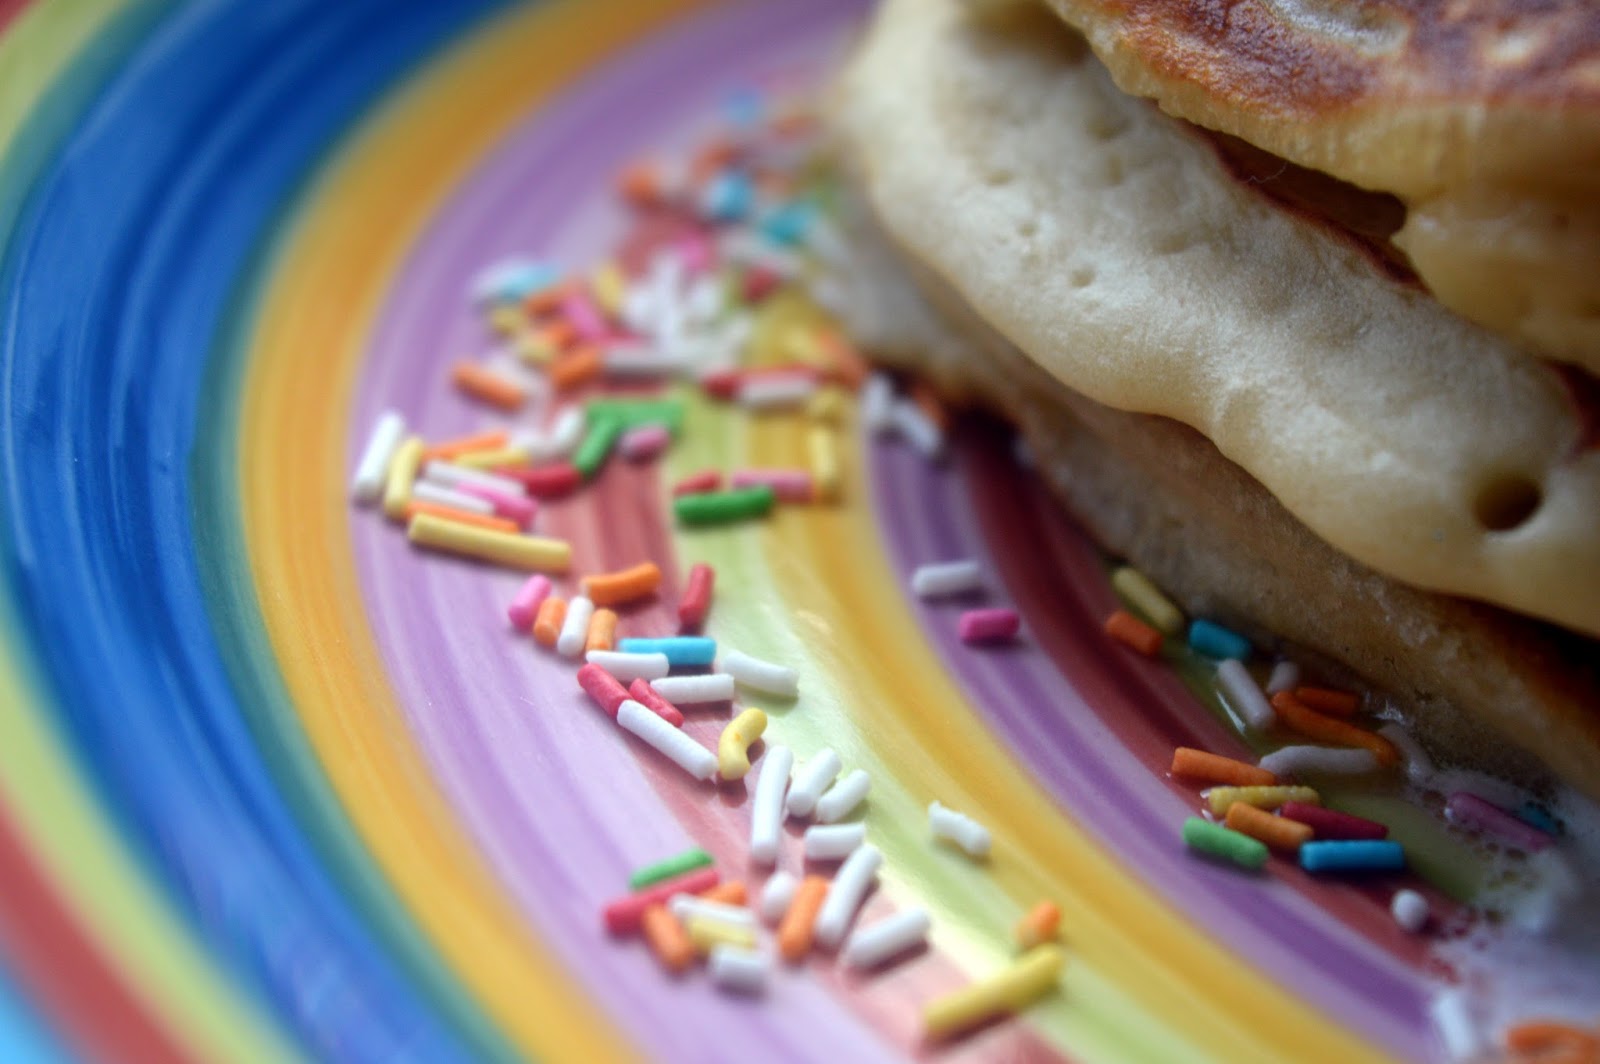 Patrycja Antosiak: Sweet pancakes